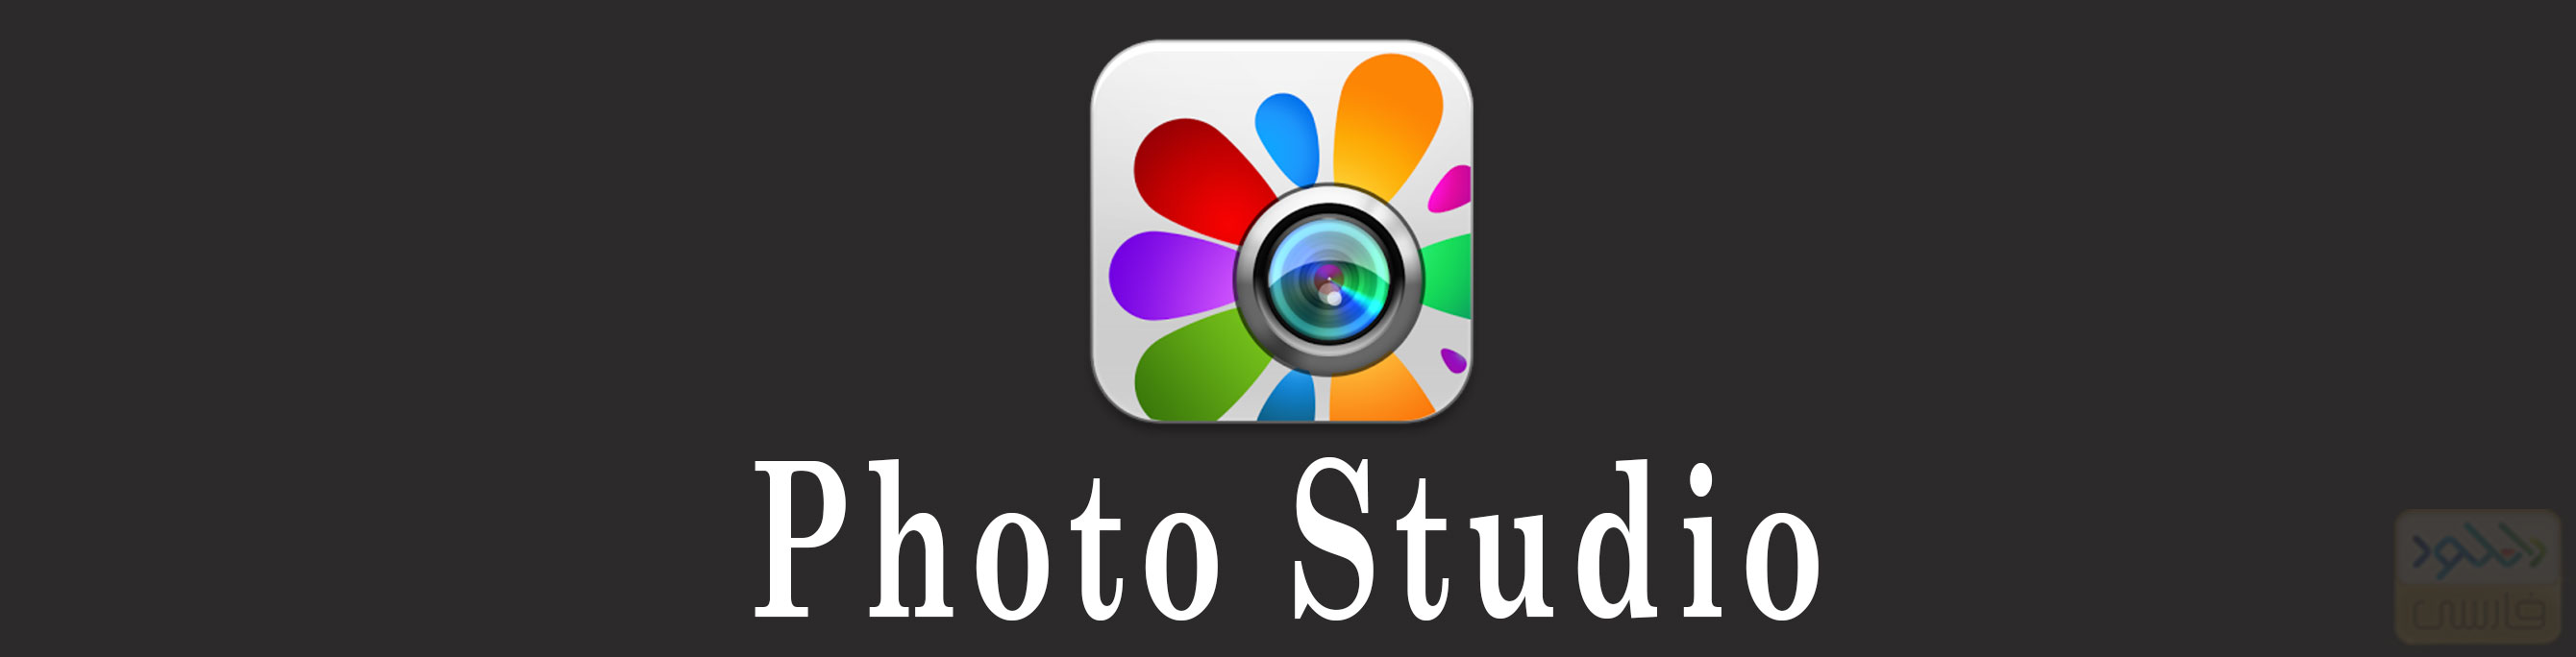 دانلود نرم افزار Photo Studio PRO 1.0 برای آیفون و آیپد